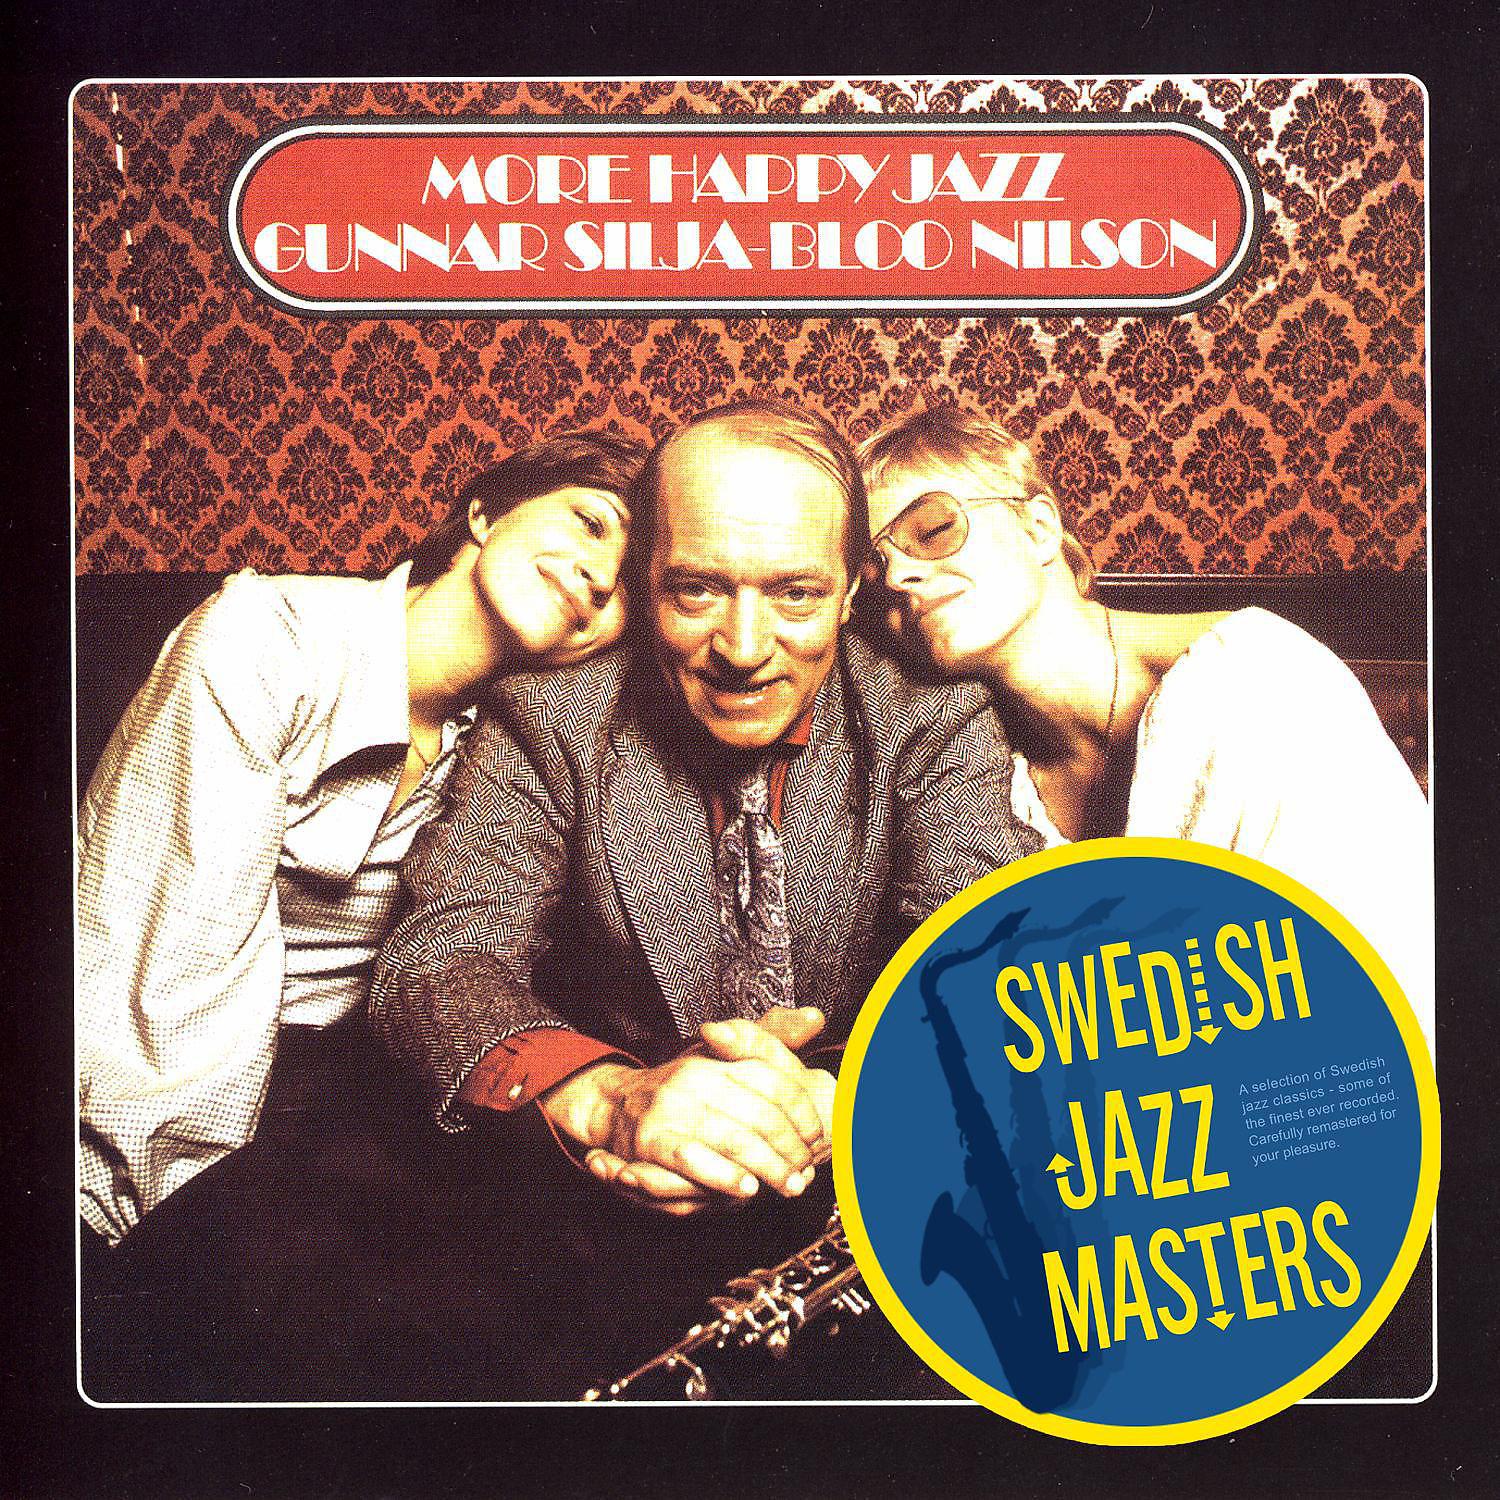 Постер альбома Swedish Jazz Masters: More Happy Jazz